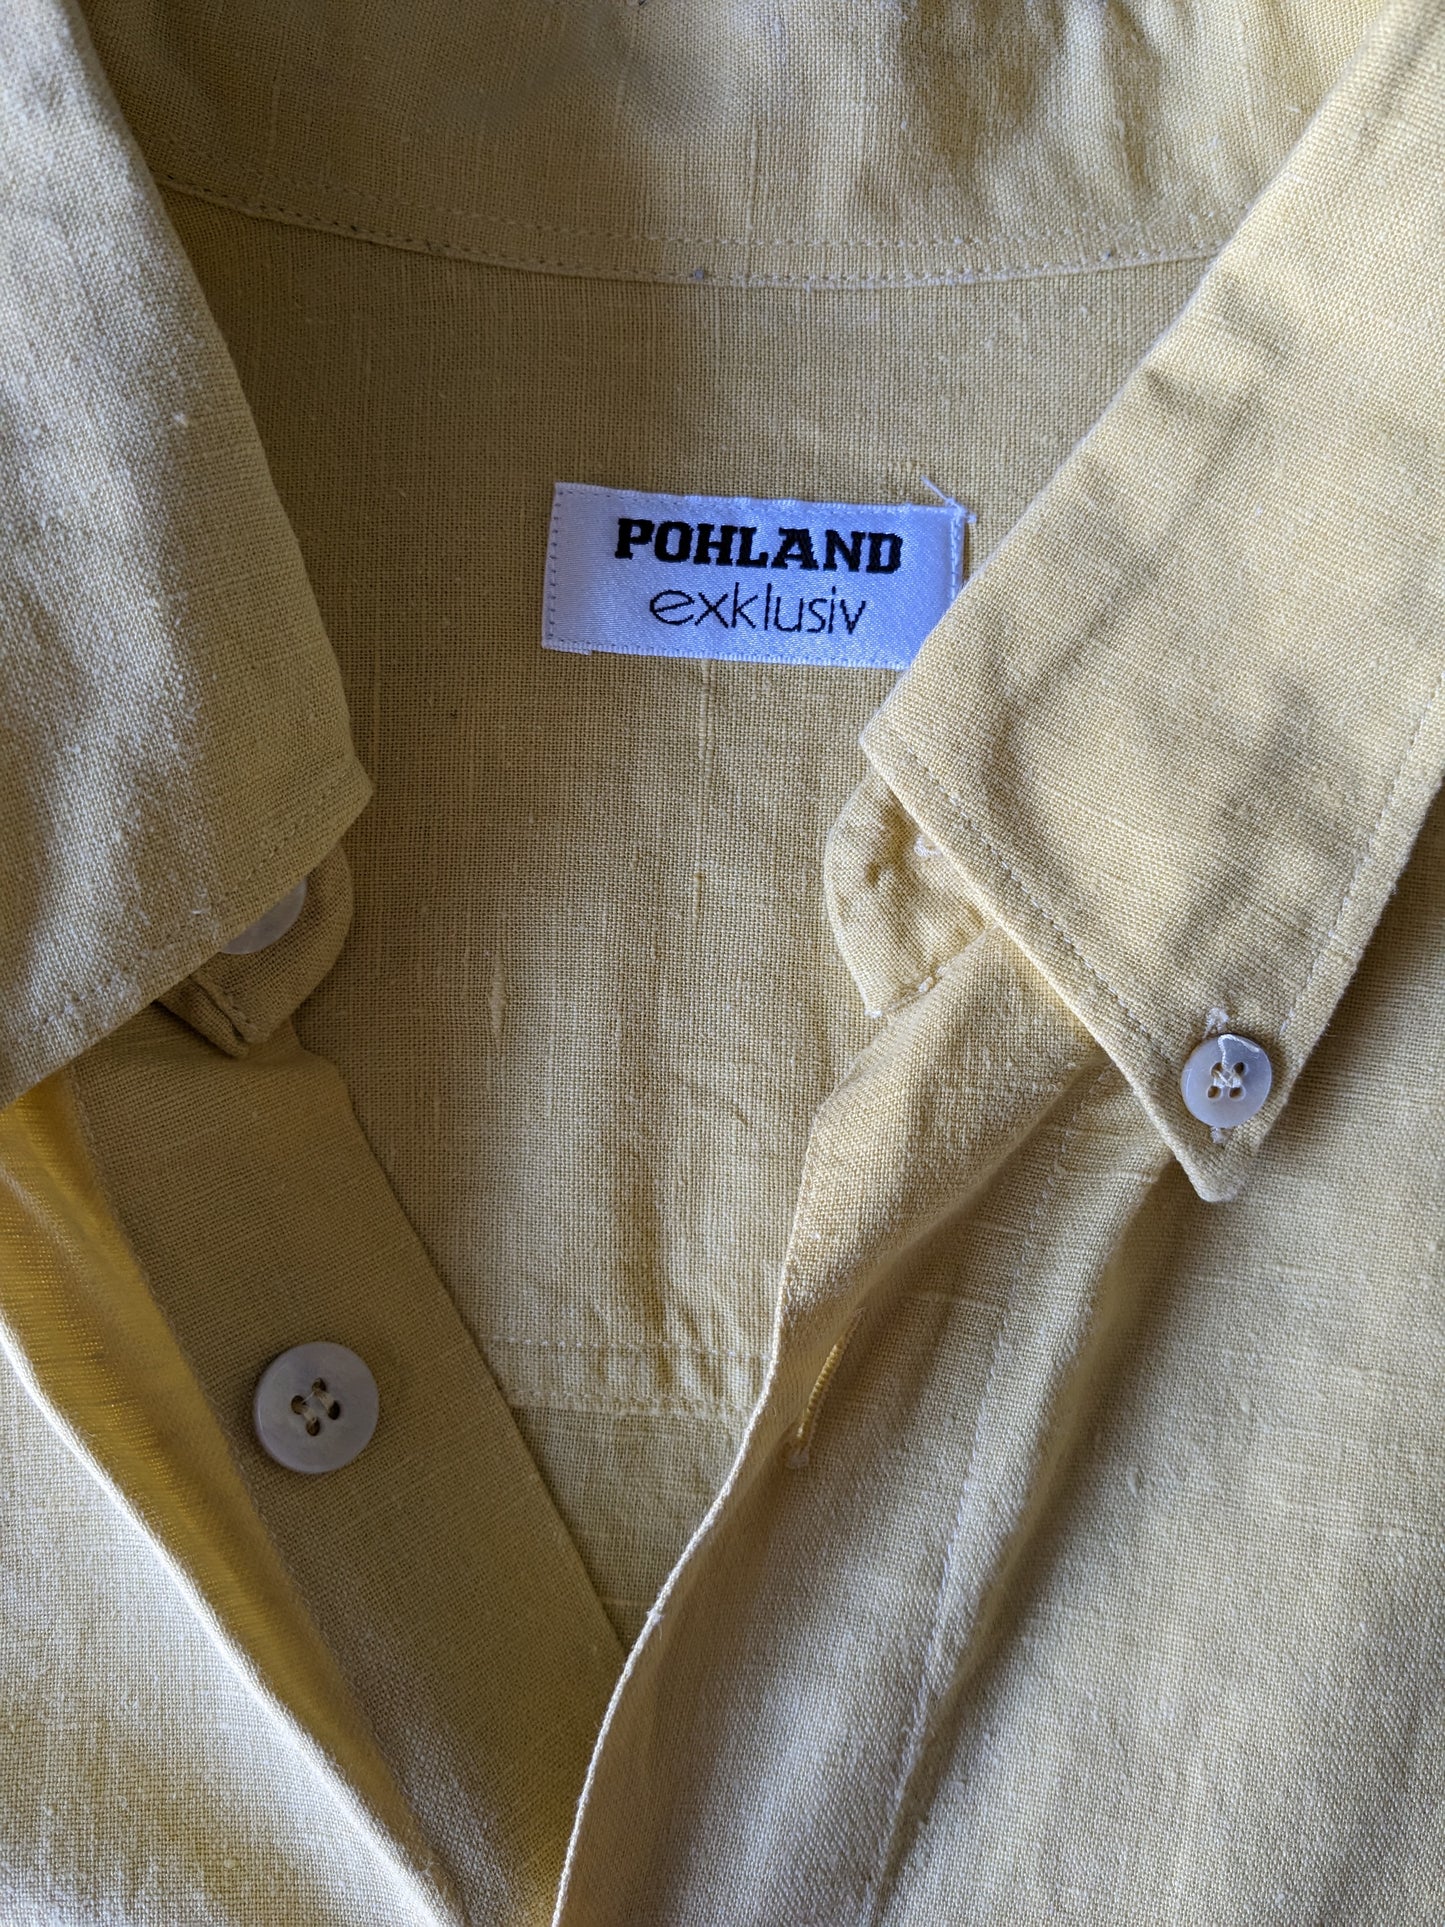 Chemise en lin Pohland vintage exklusiv avec boutons plus grands. Couleur jaune. Taille 2xl / xxl.